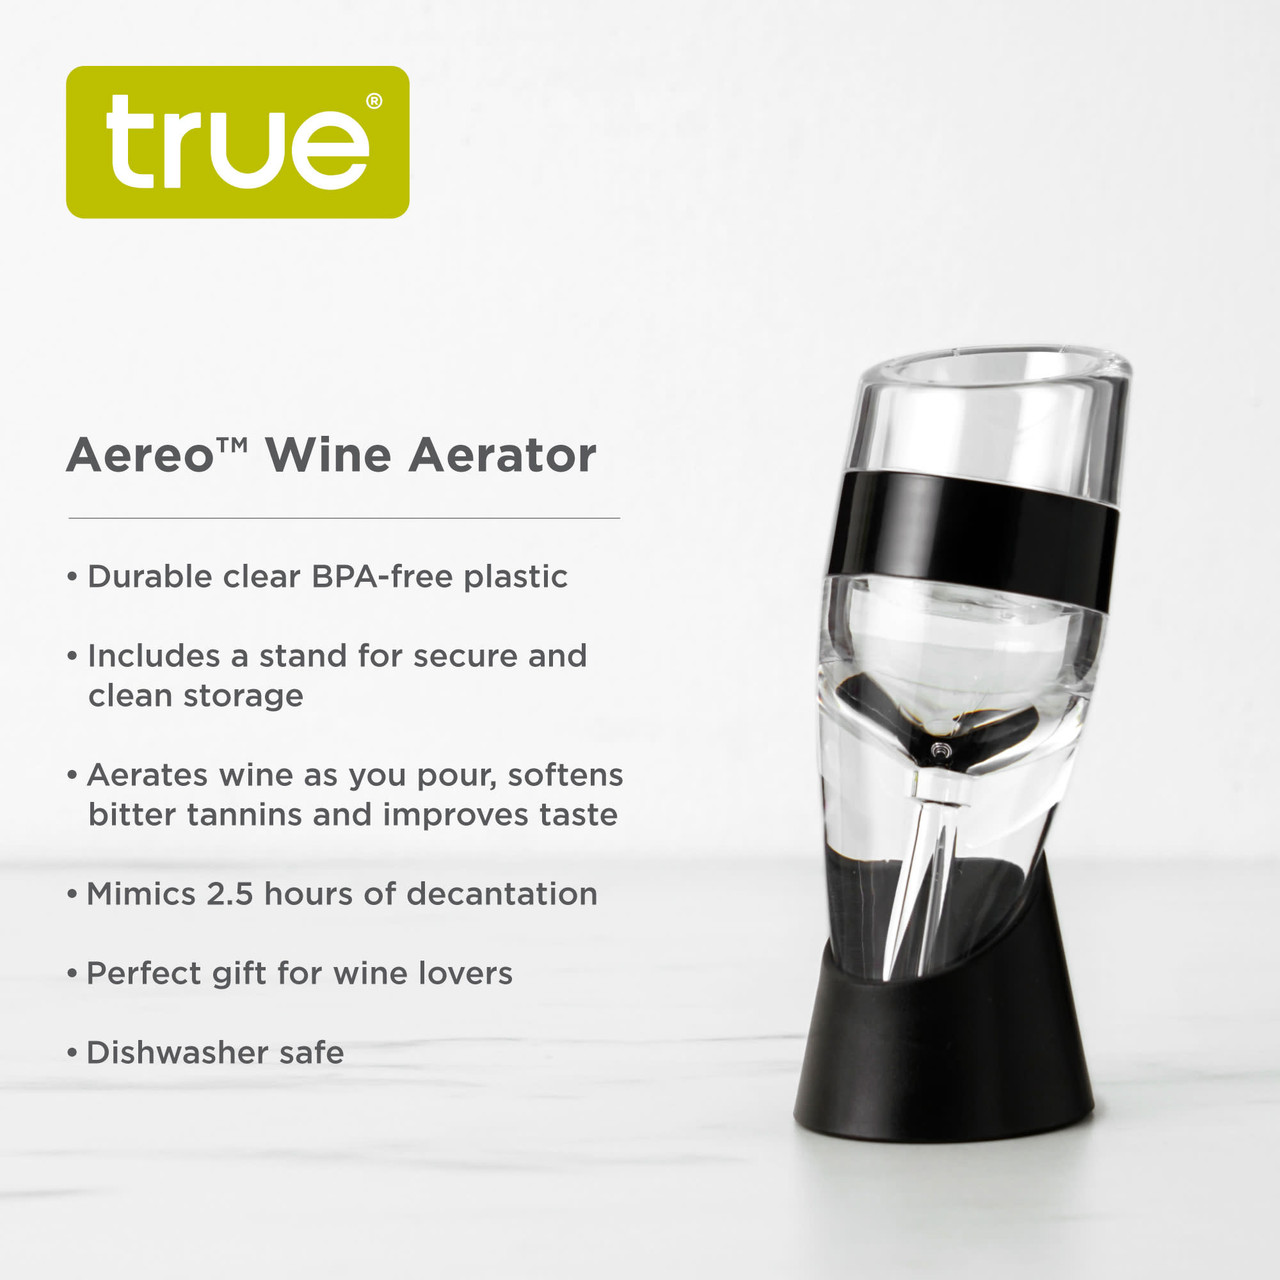 Aereo Wine Aerator by True